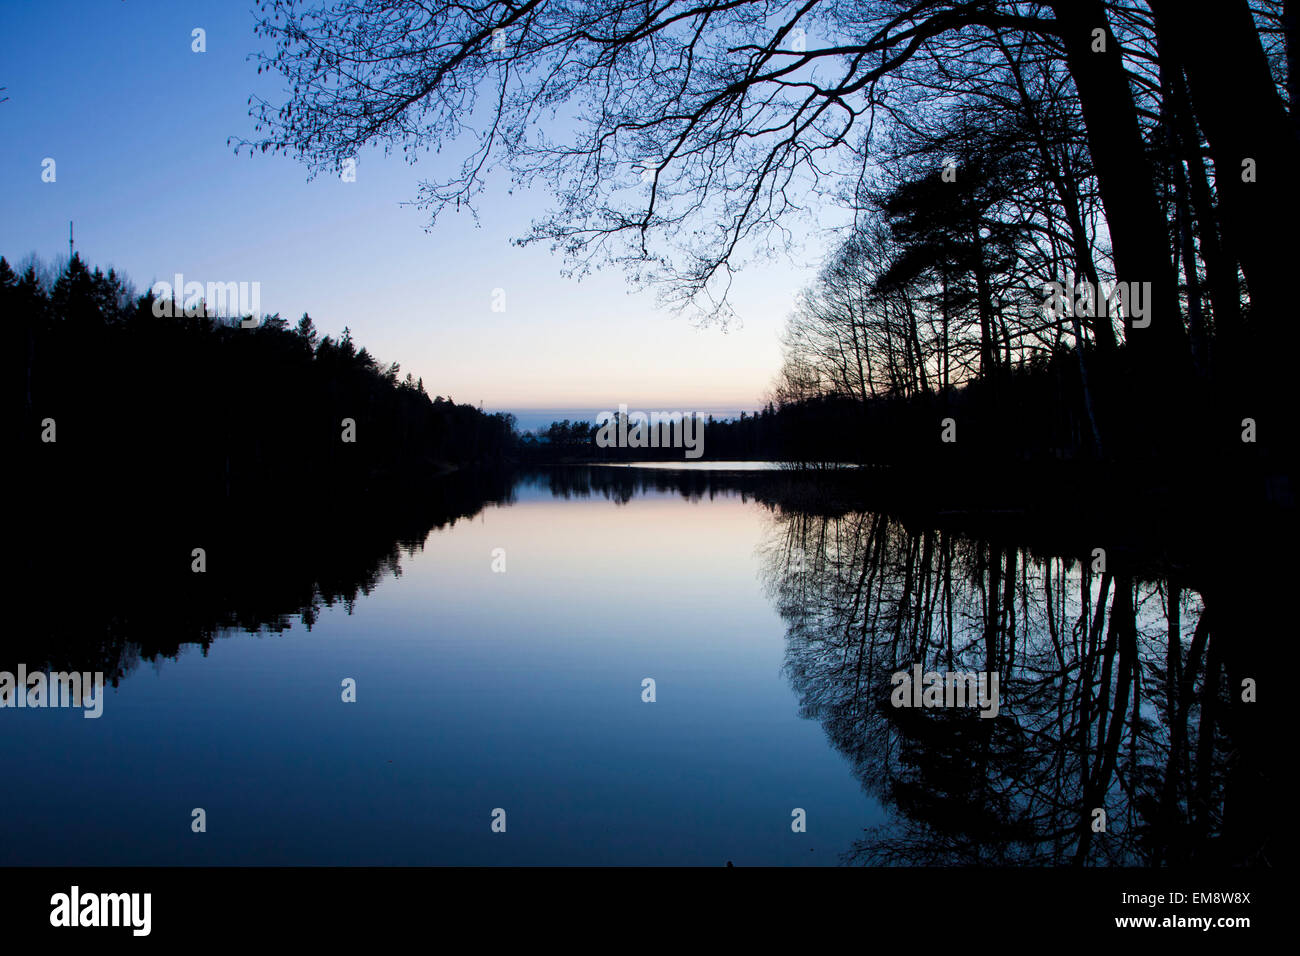 Schweden, kleiner See in der Dämmerung mit Ruhe, ruhigen Gewässern und Baum Reflexion auf Oberfläche Stockfoto